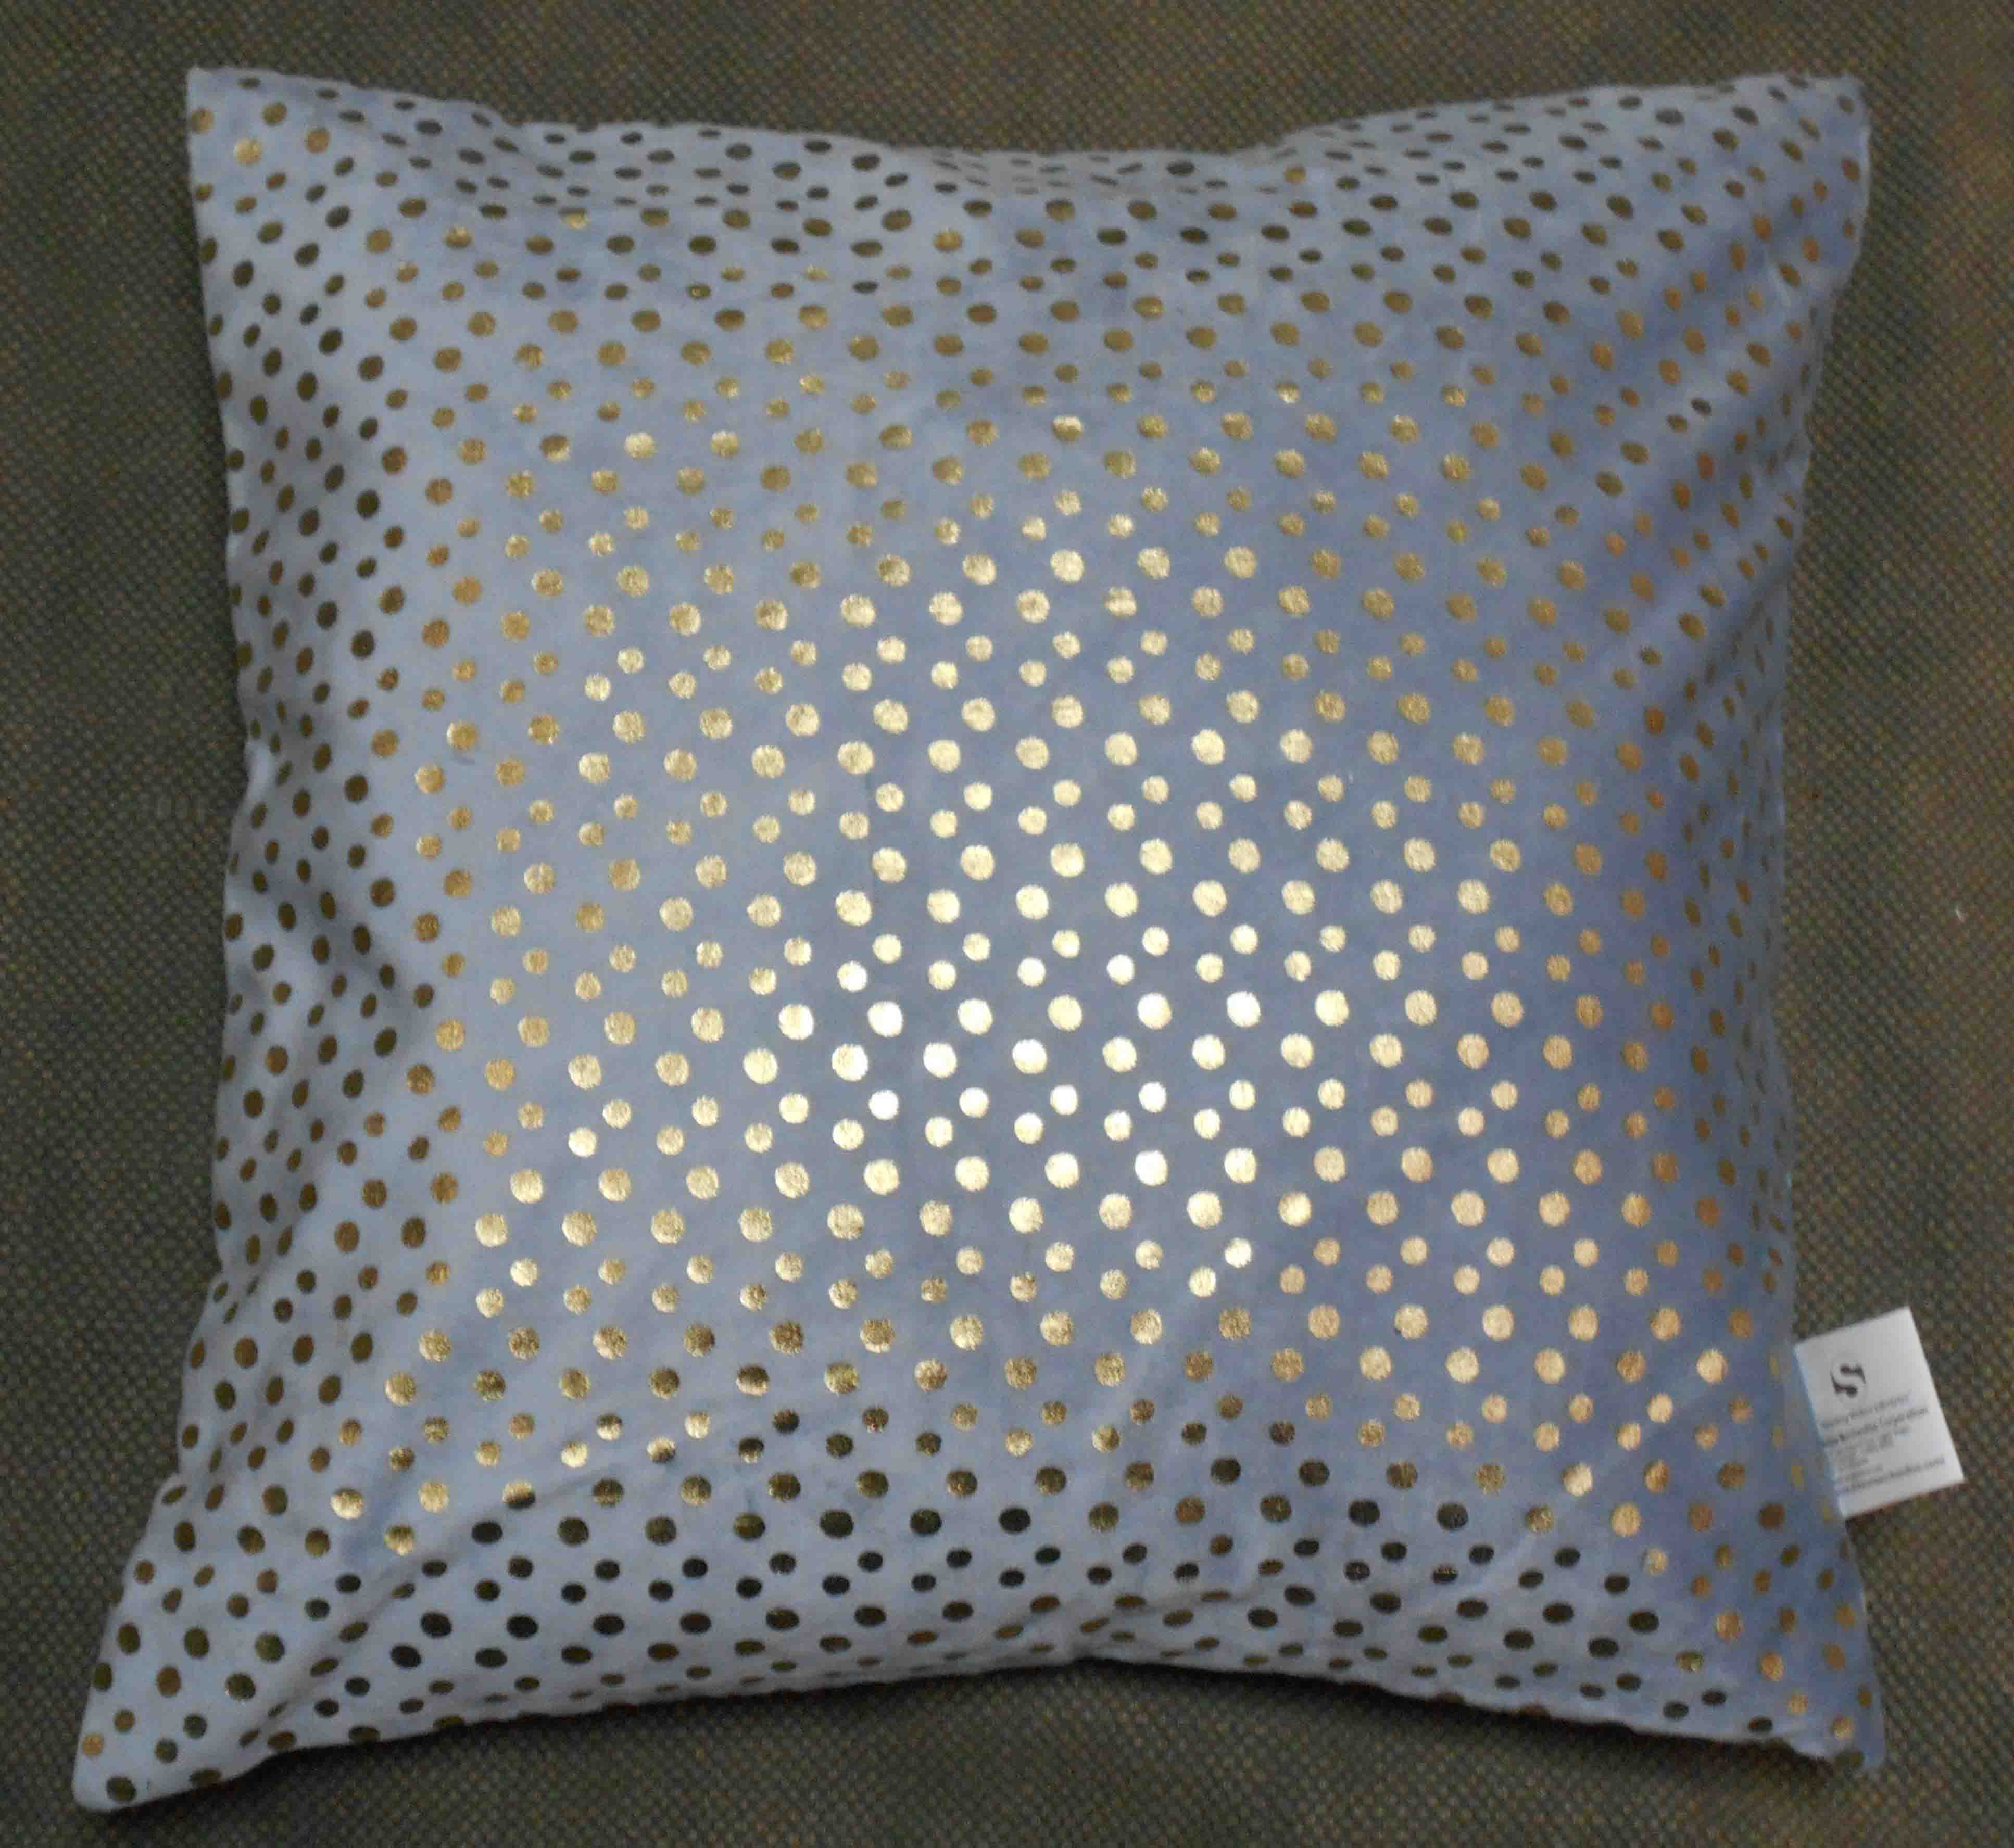 Foil Cushion Cover